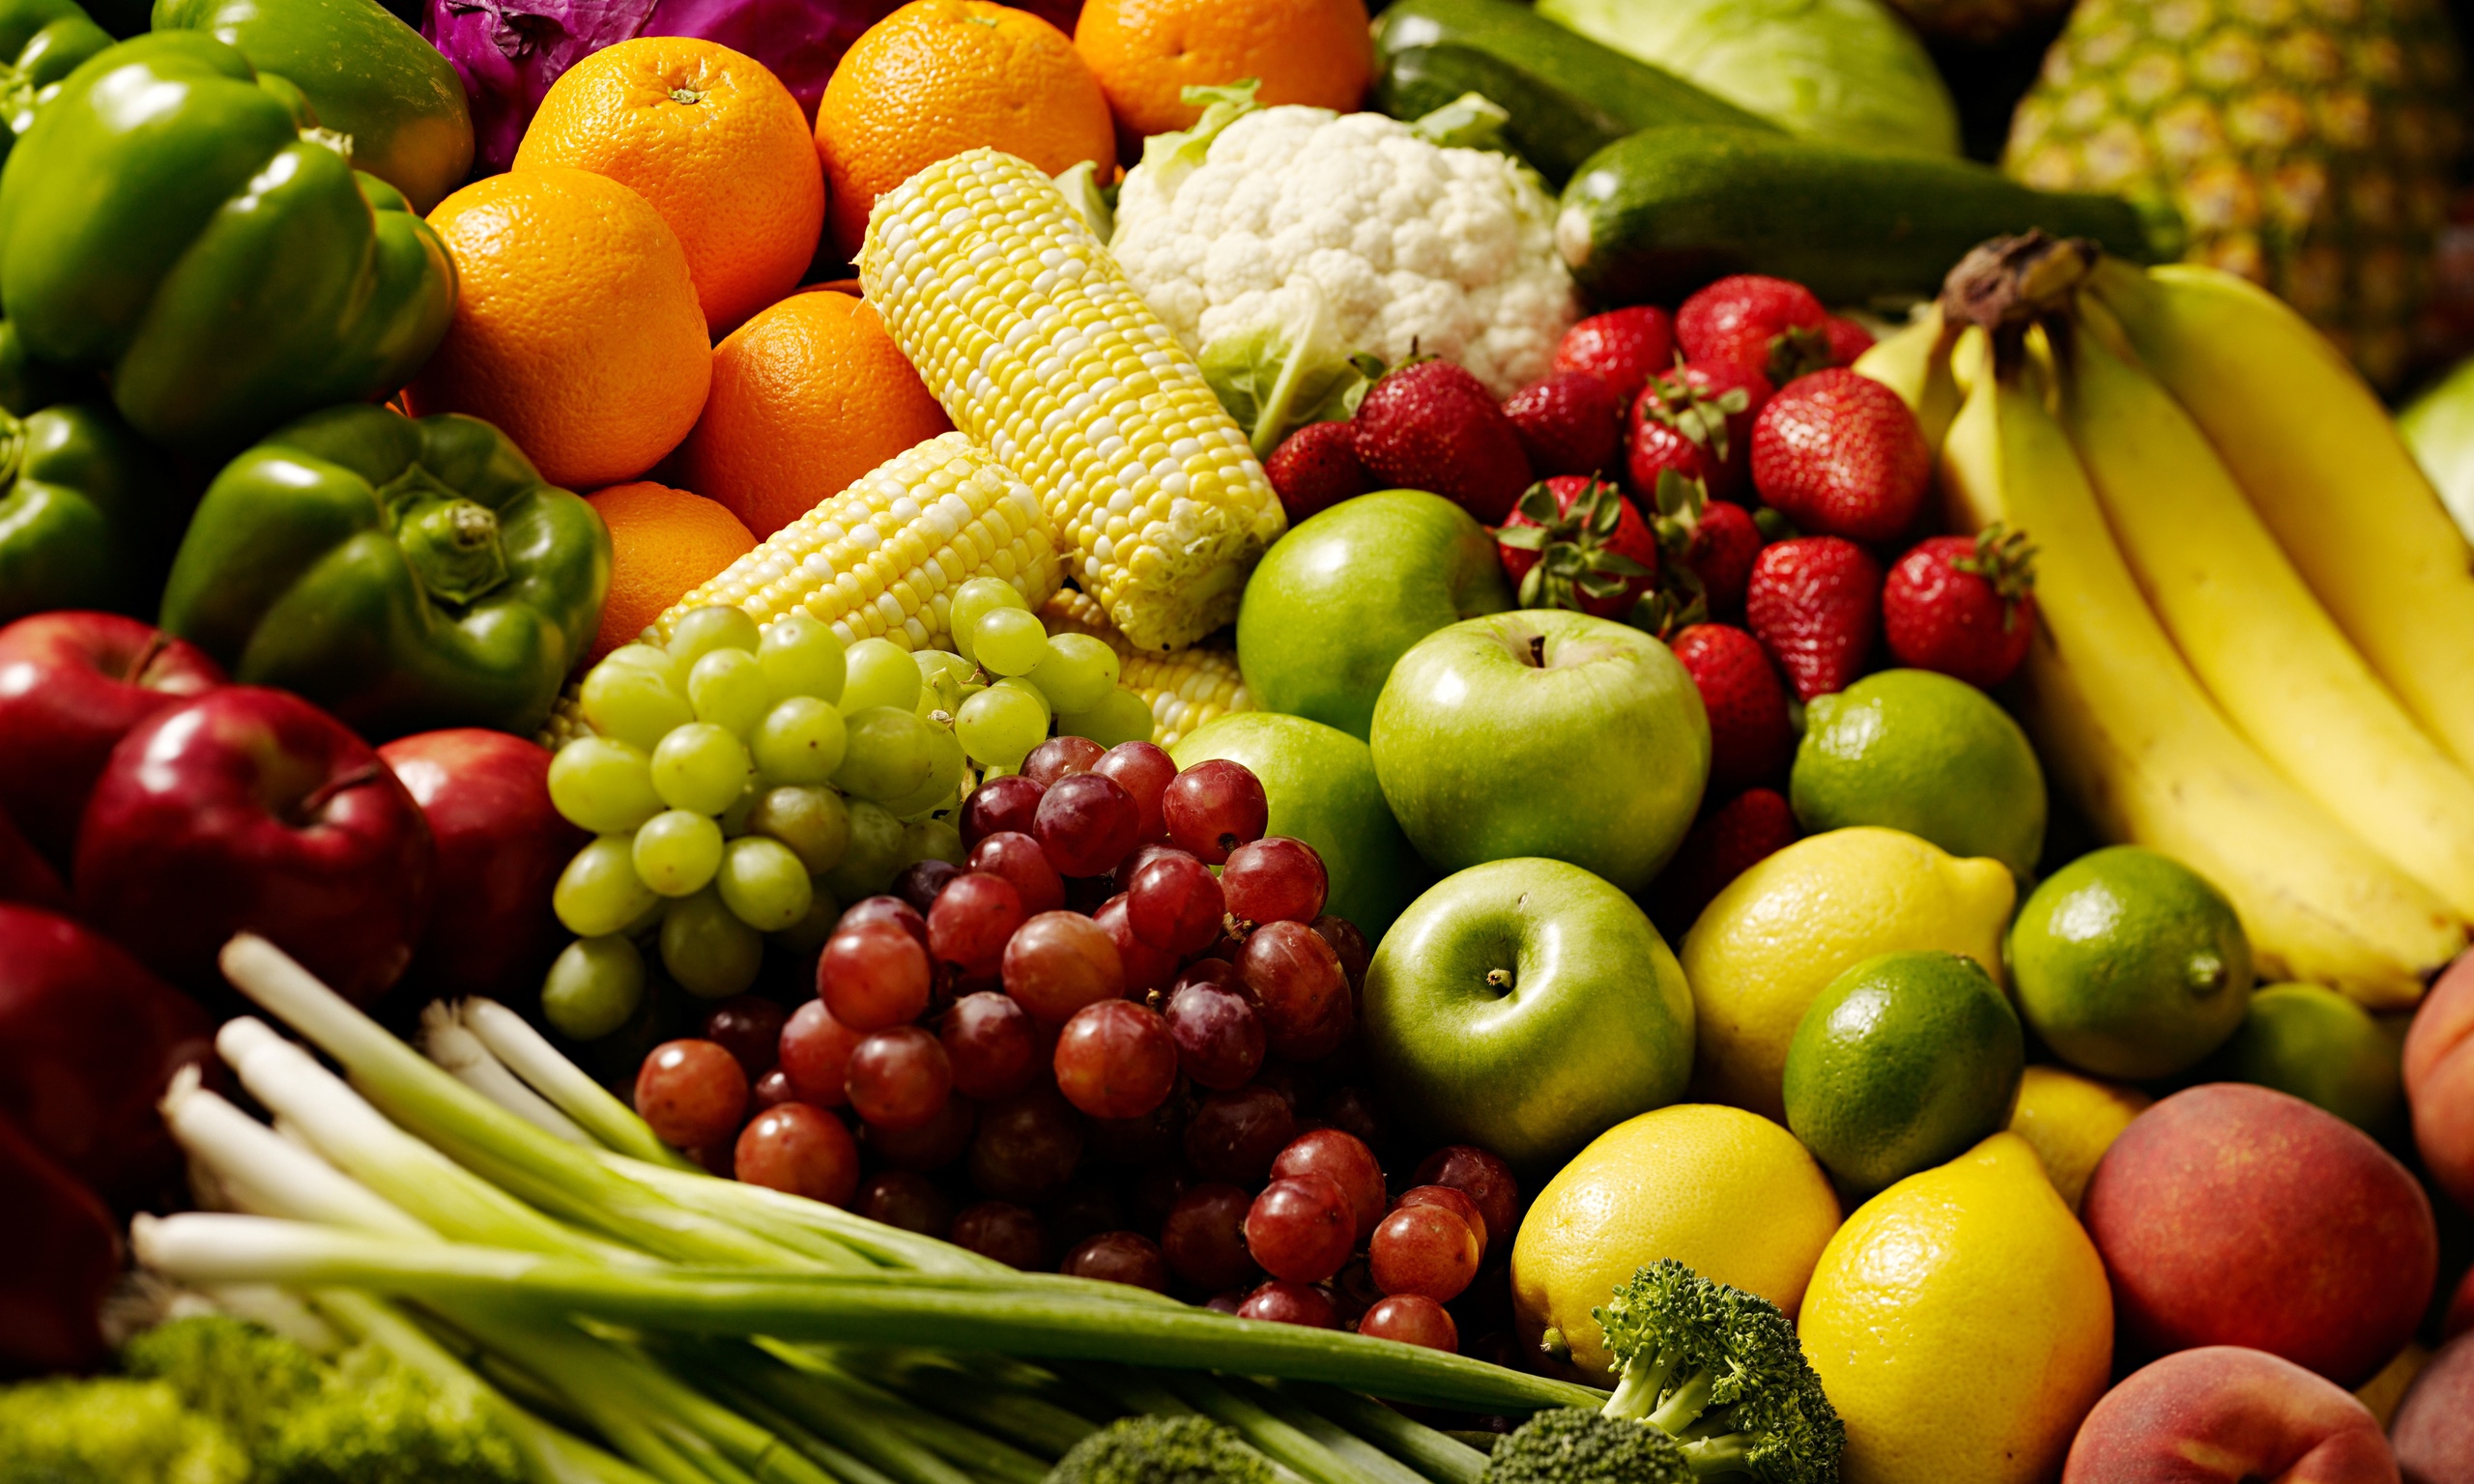 Fruits & Vegetables #7